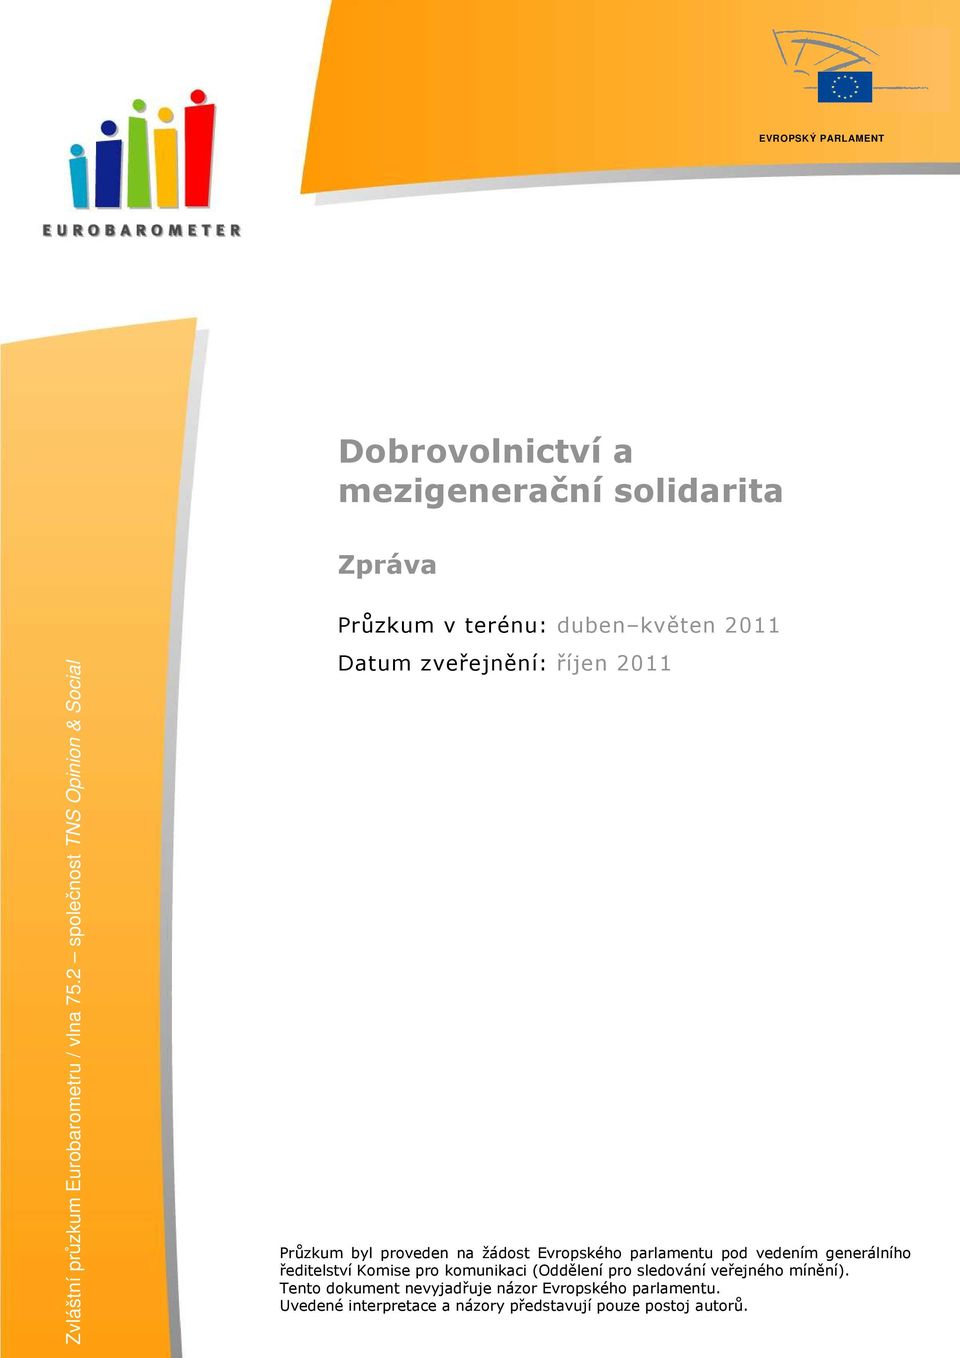 2 společnost TNS Opinion & Social Datum zveřejnění: říjen 2011 Průzkum byl proveden na žádost Evropského parlamentu pod